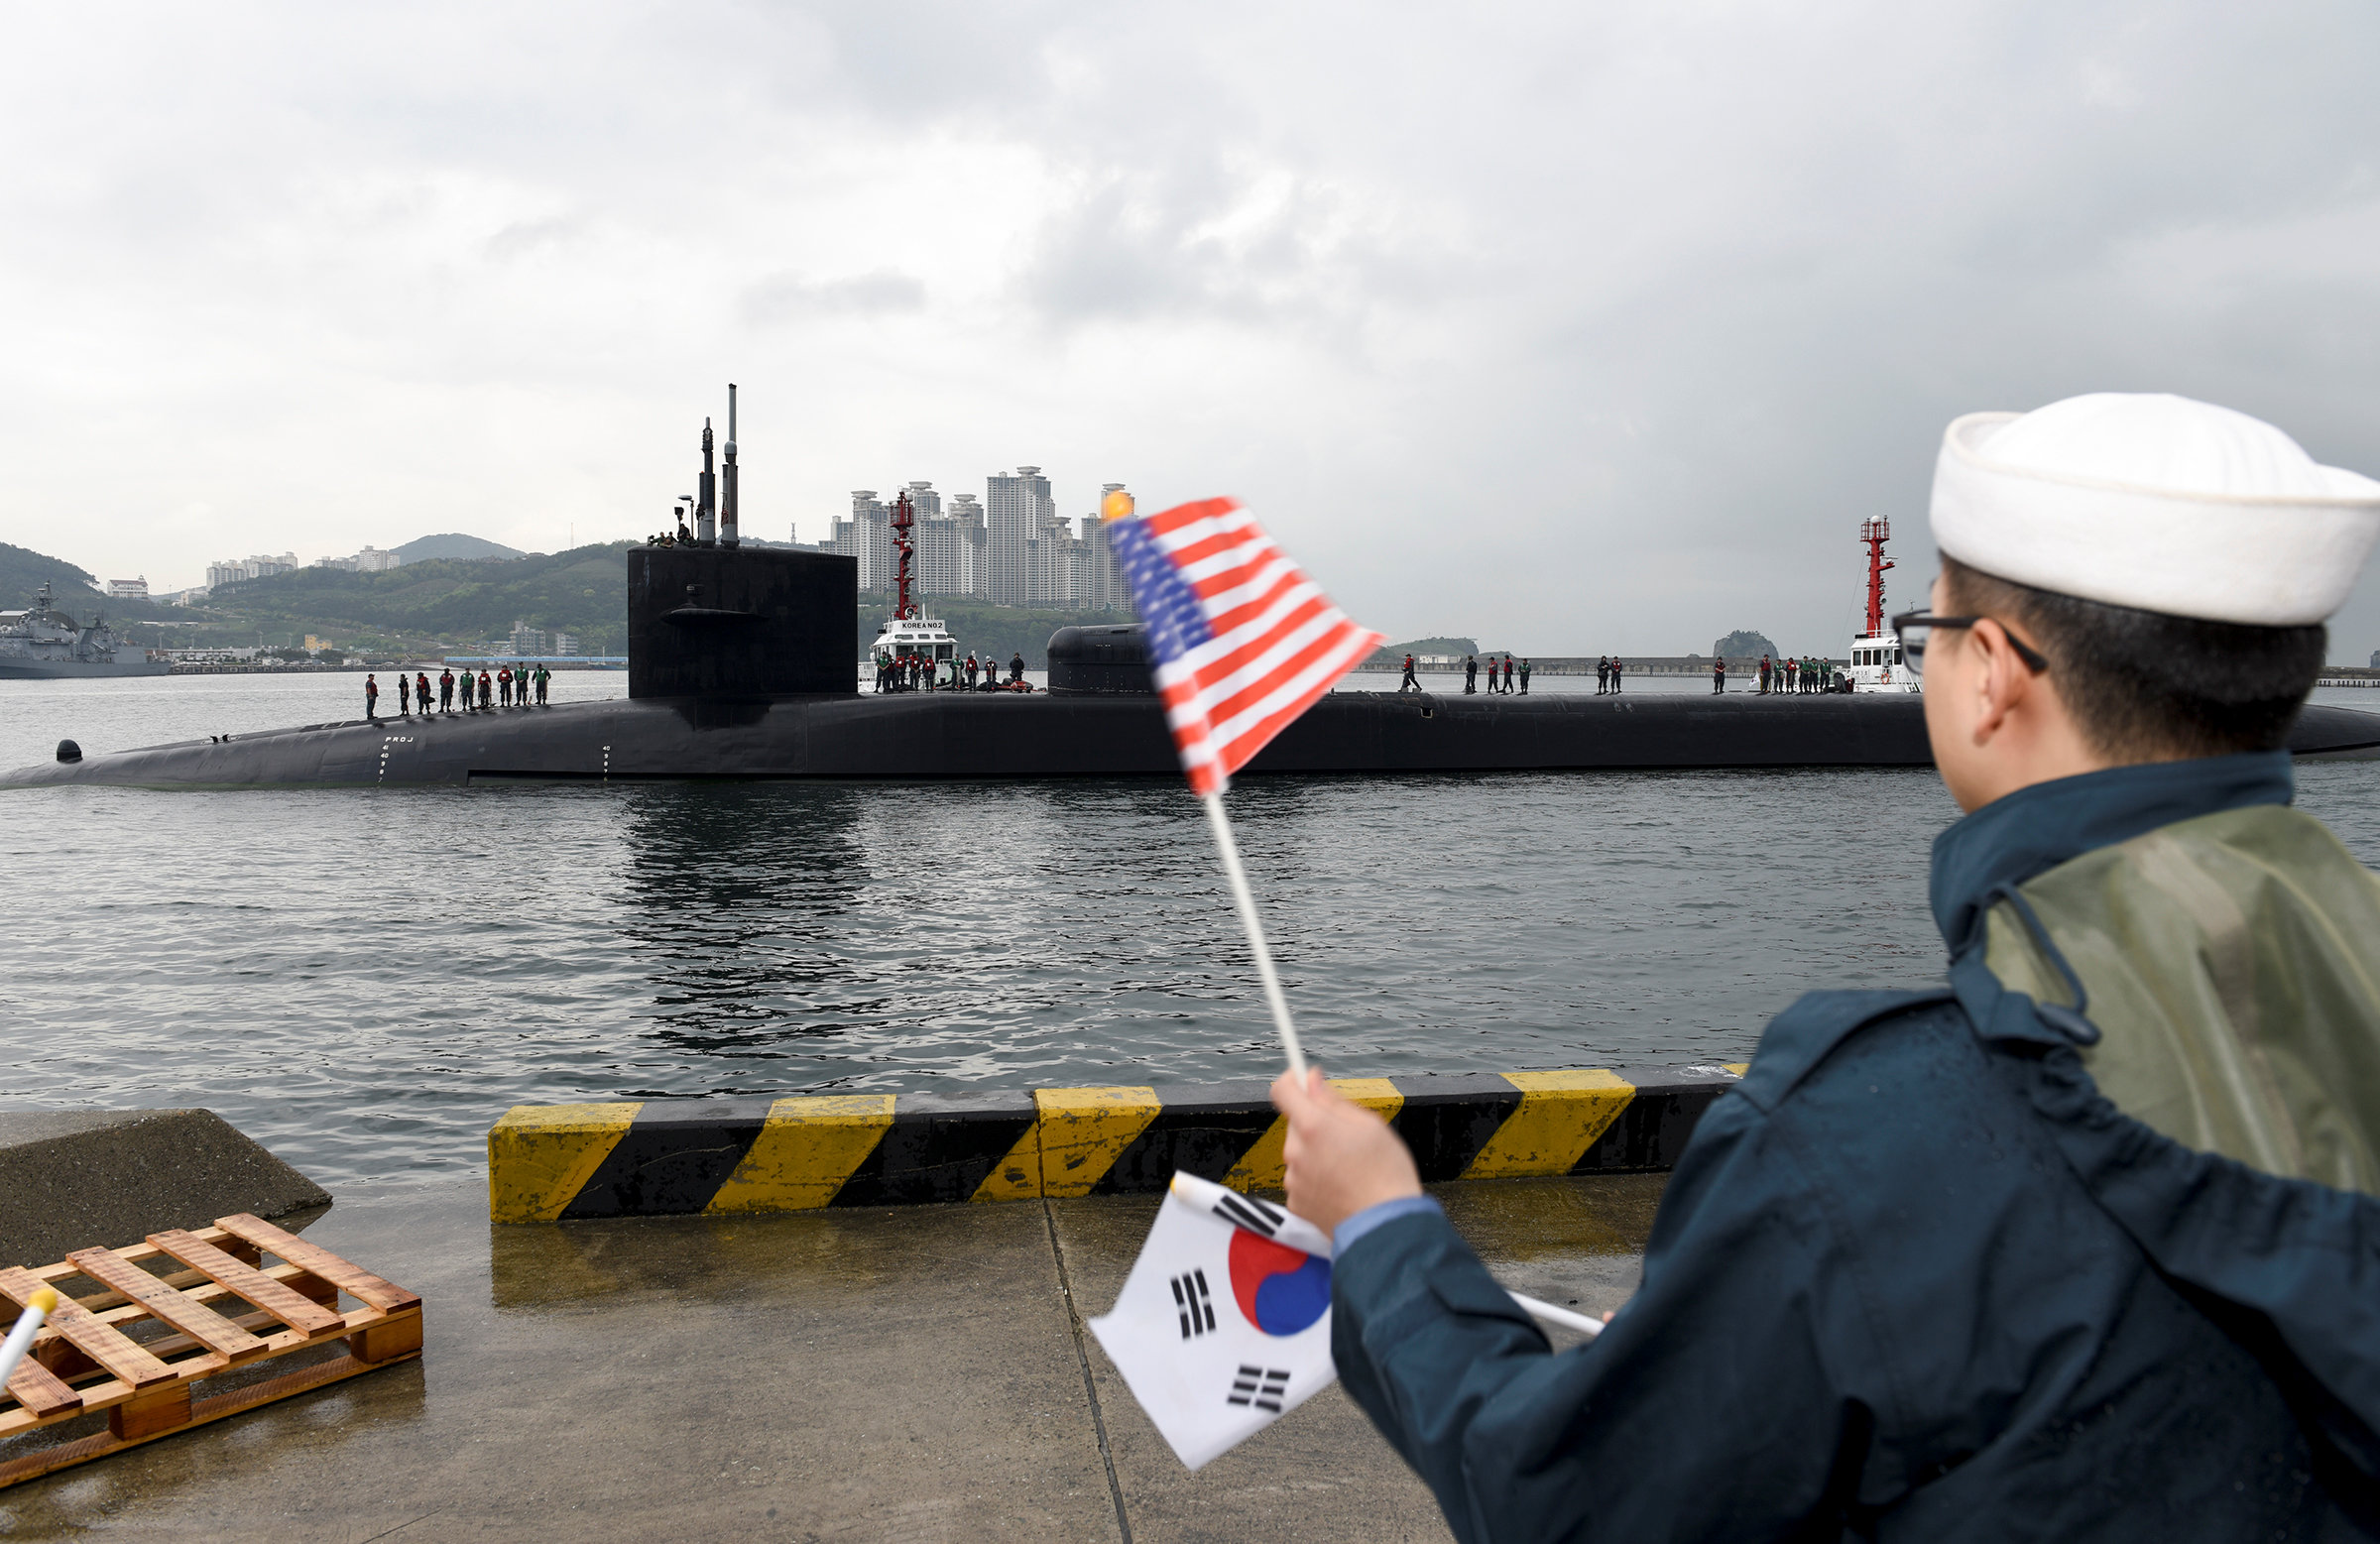 La llegada del USS Michigan coincide con la celebración hoy del 85 aniversario del ejército norcoreano. (Reuters)